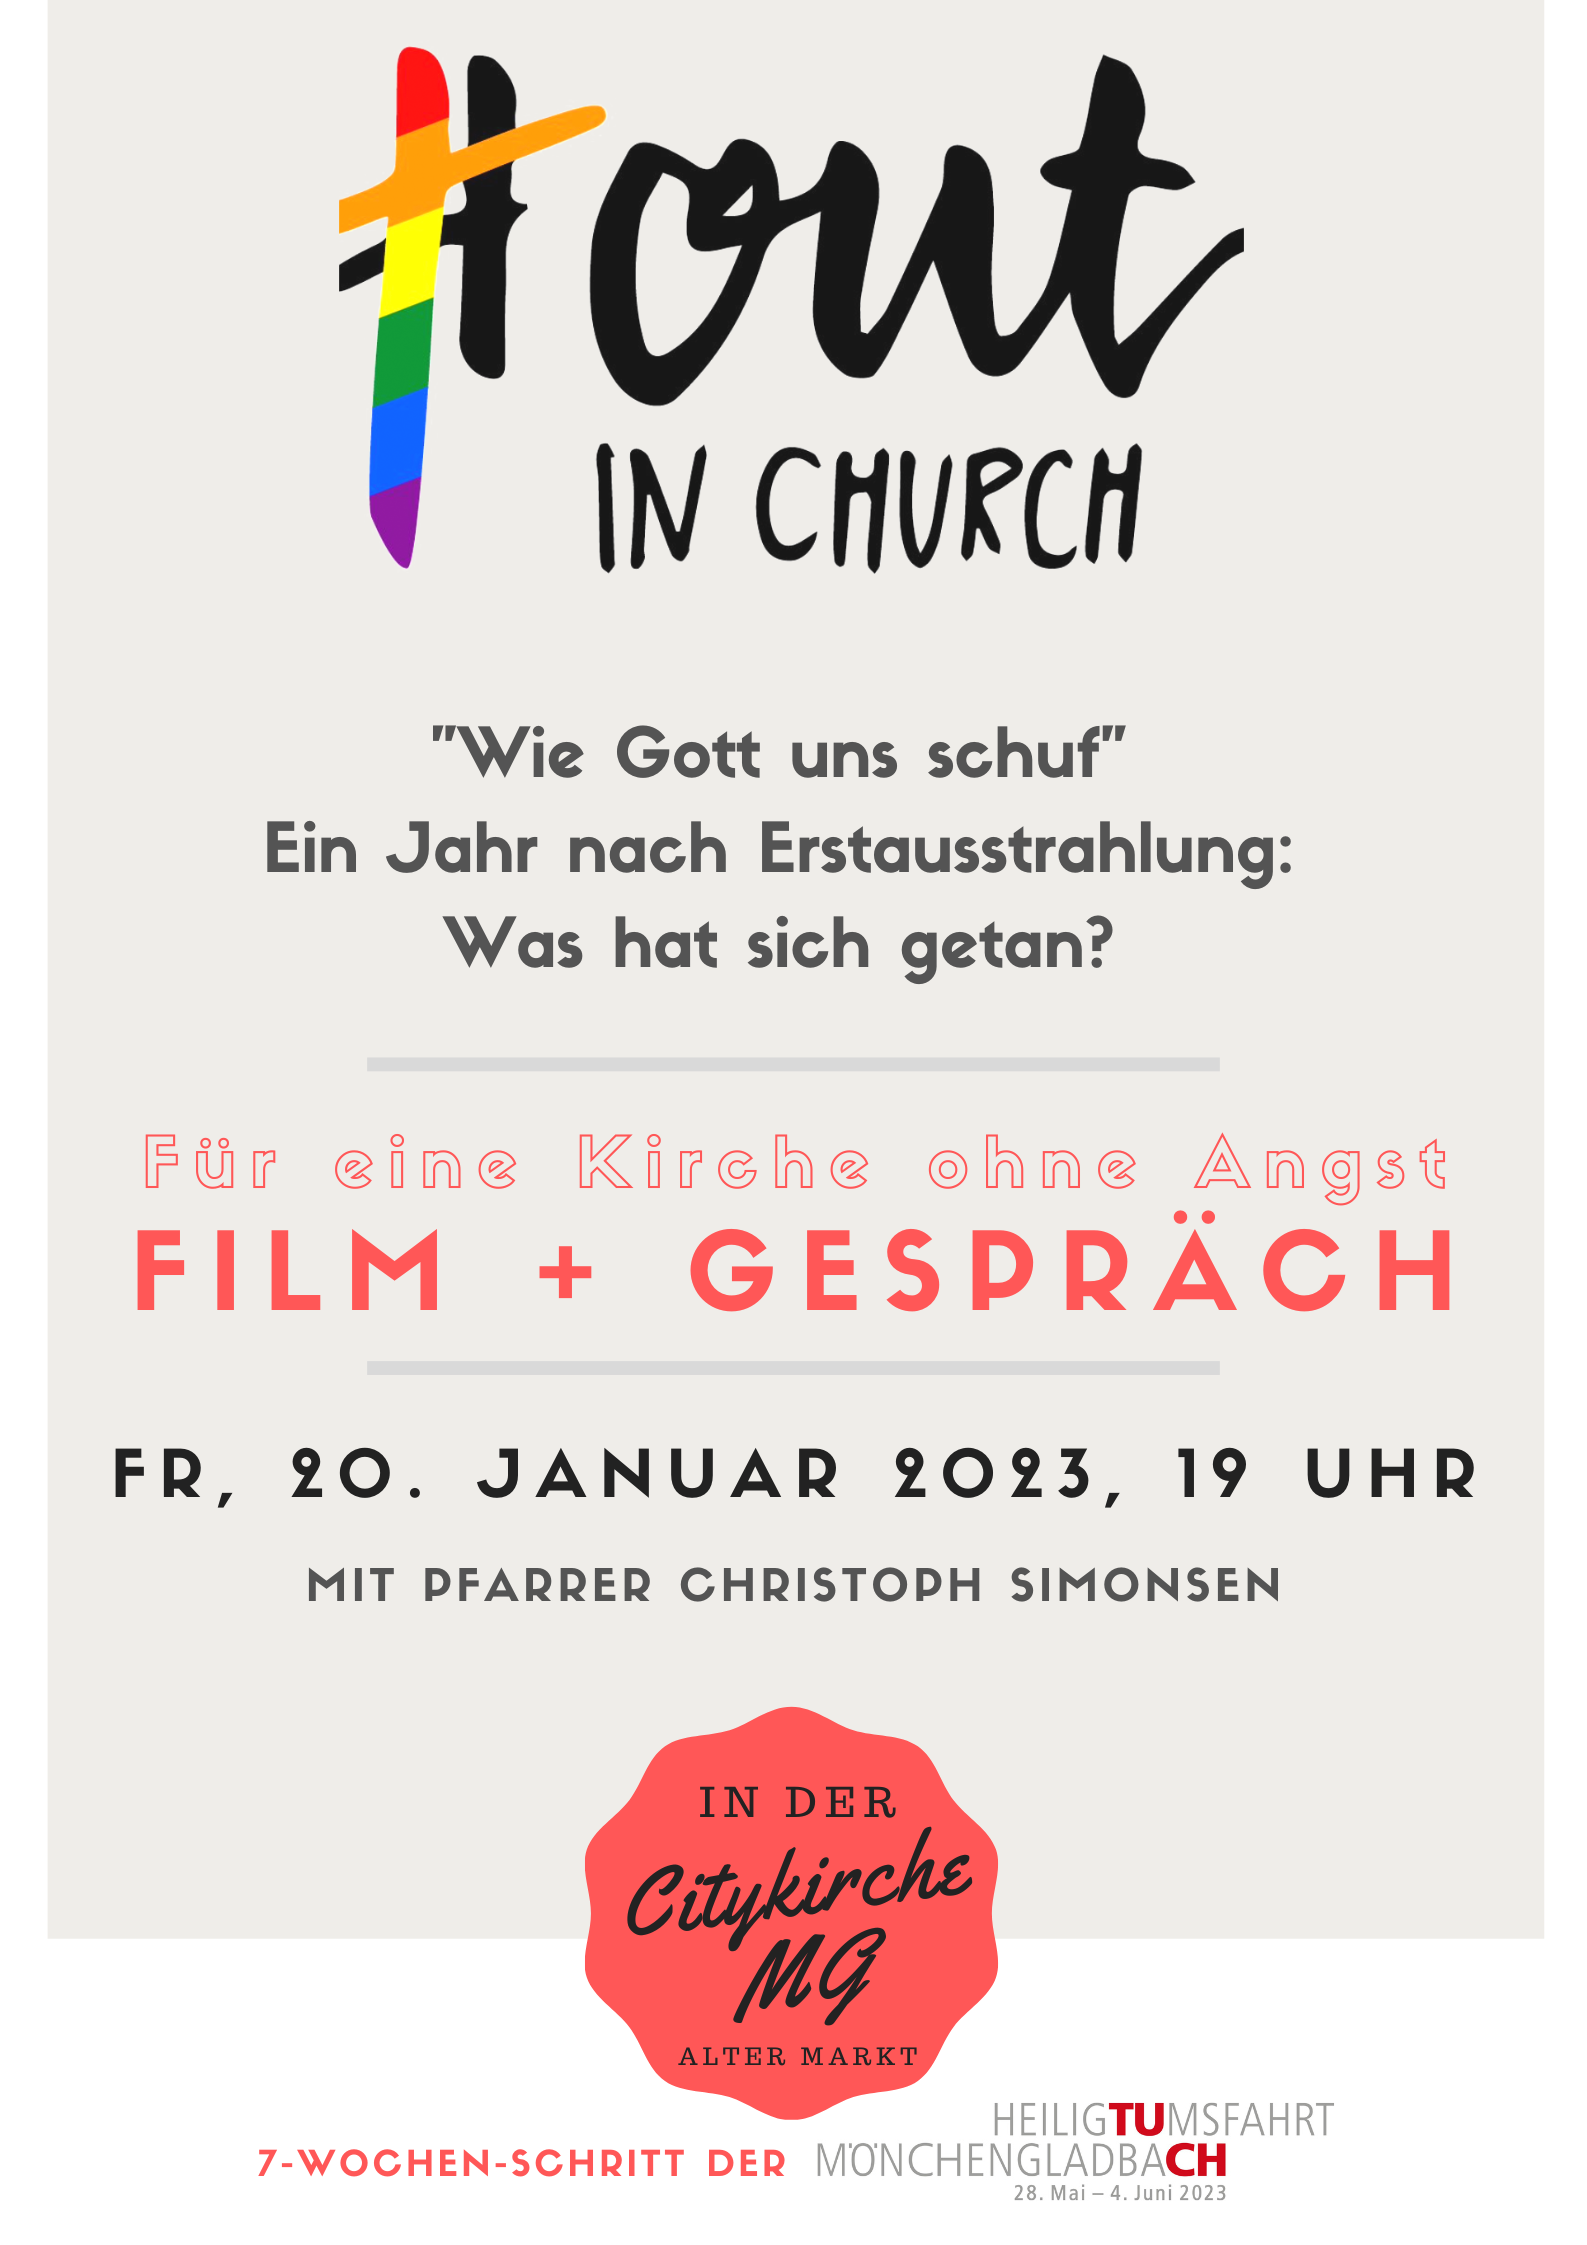 Out in Church - was hat sich getan? (c) Heiligtumsfahrt Mönchengladbach